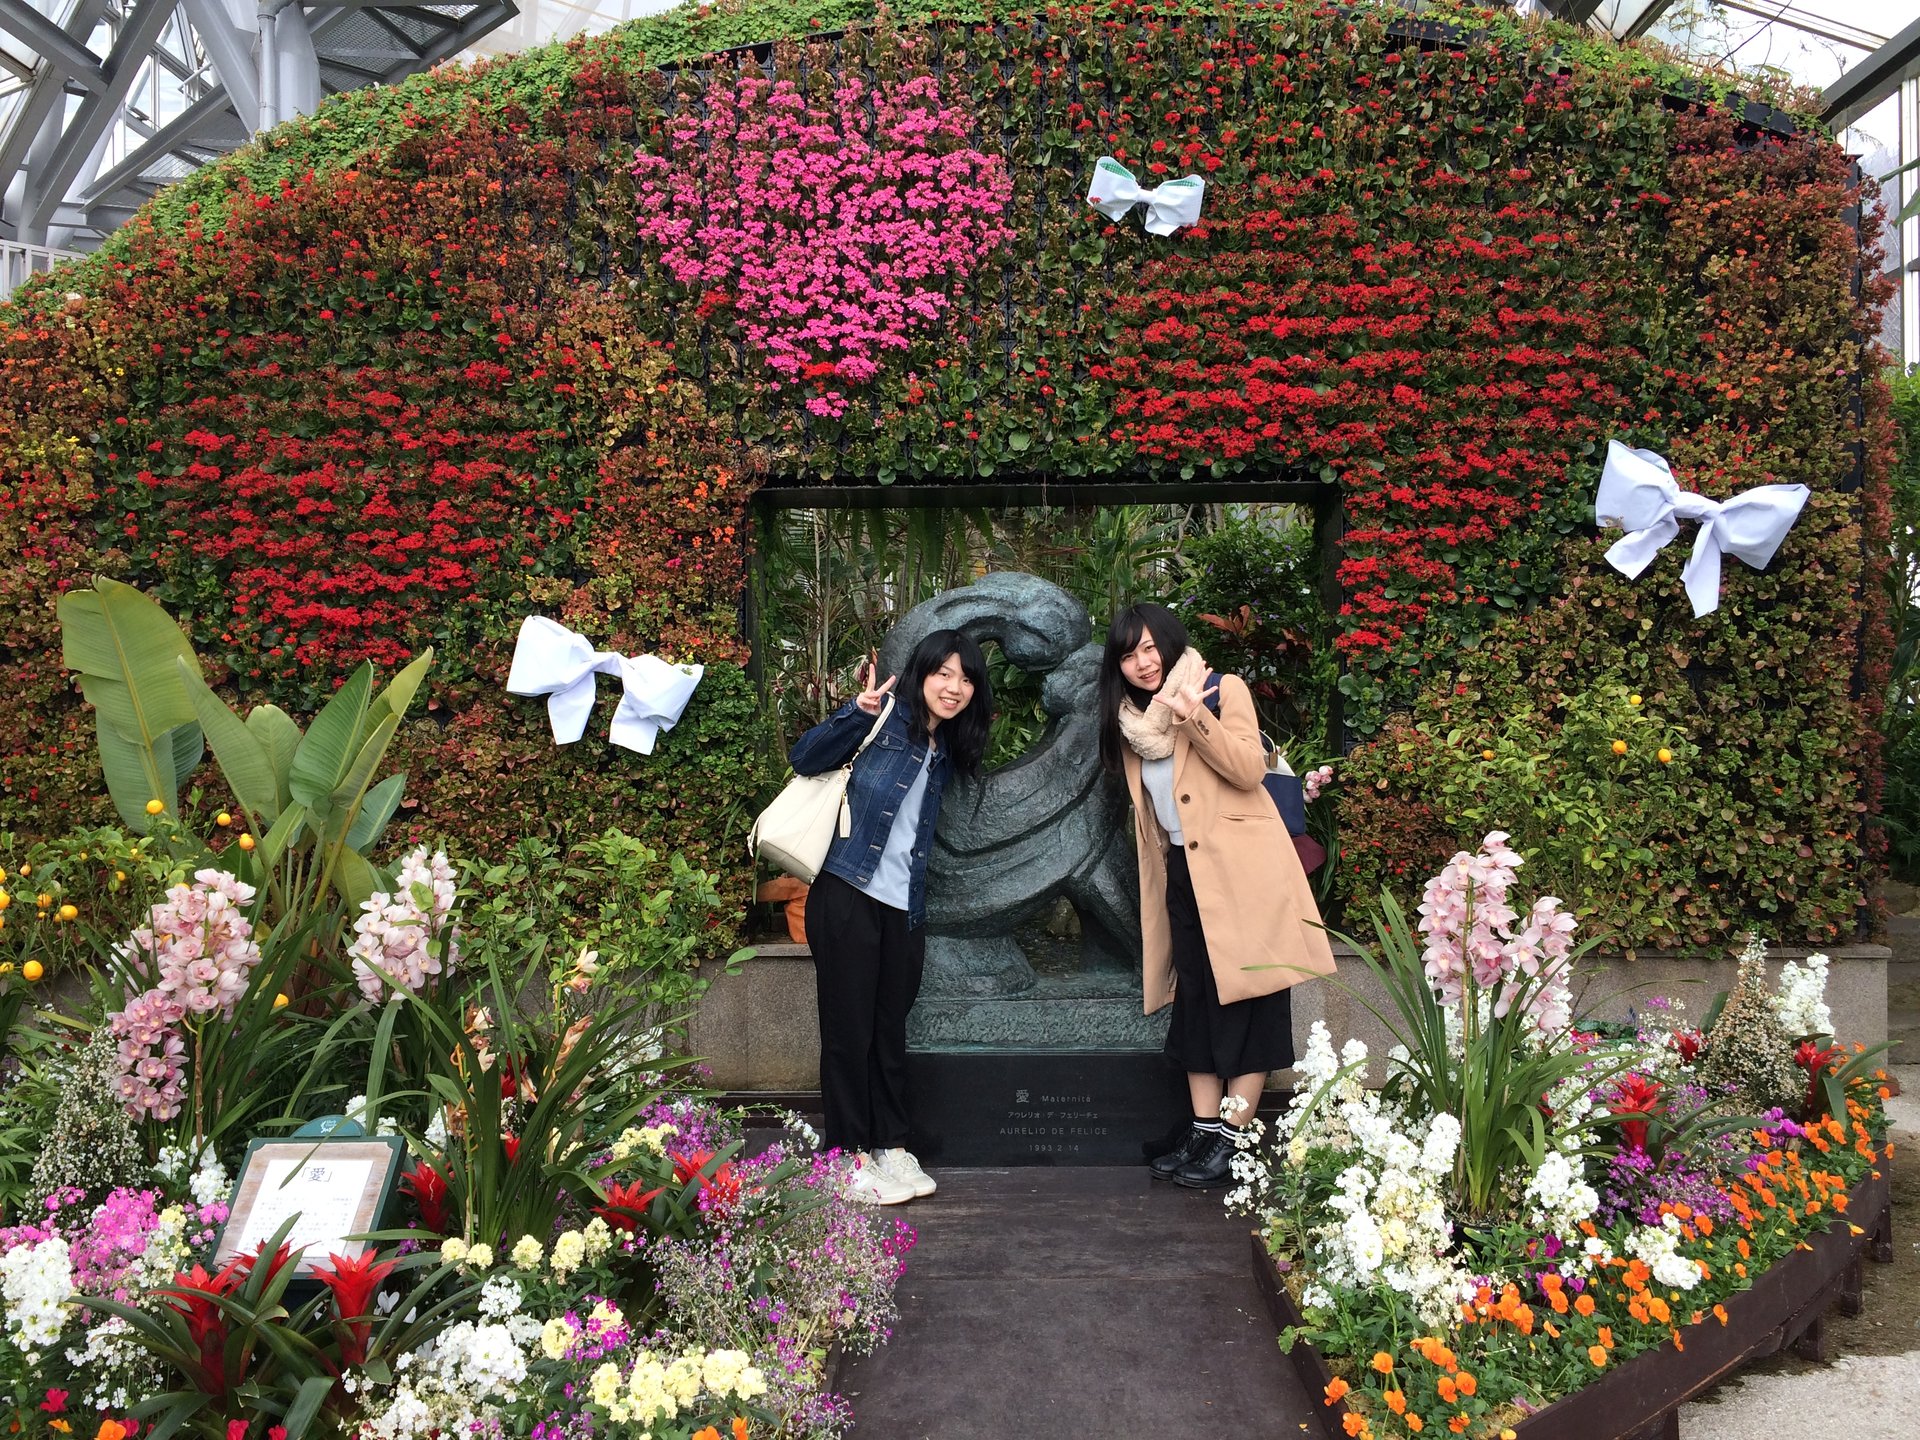 日本最大級のハーブ園でのんびりな1日を過ごそう♪【神戸布引ハーブ園】